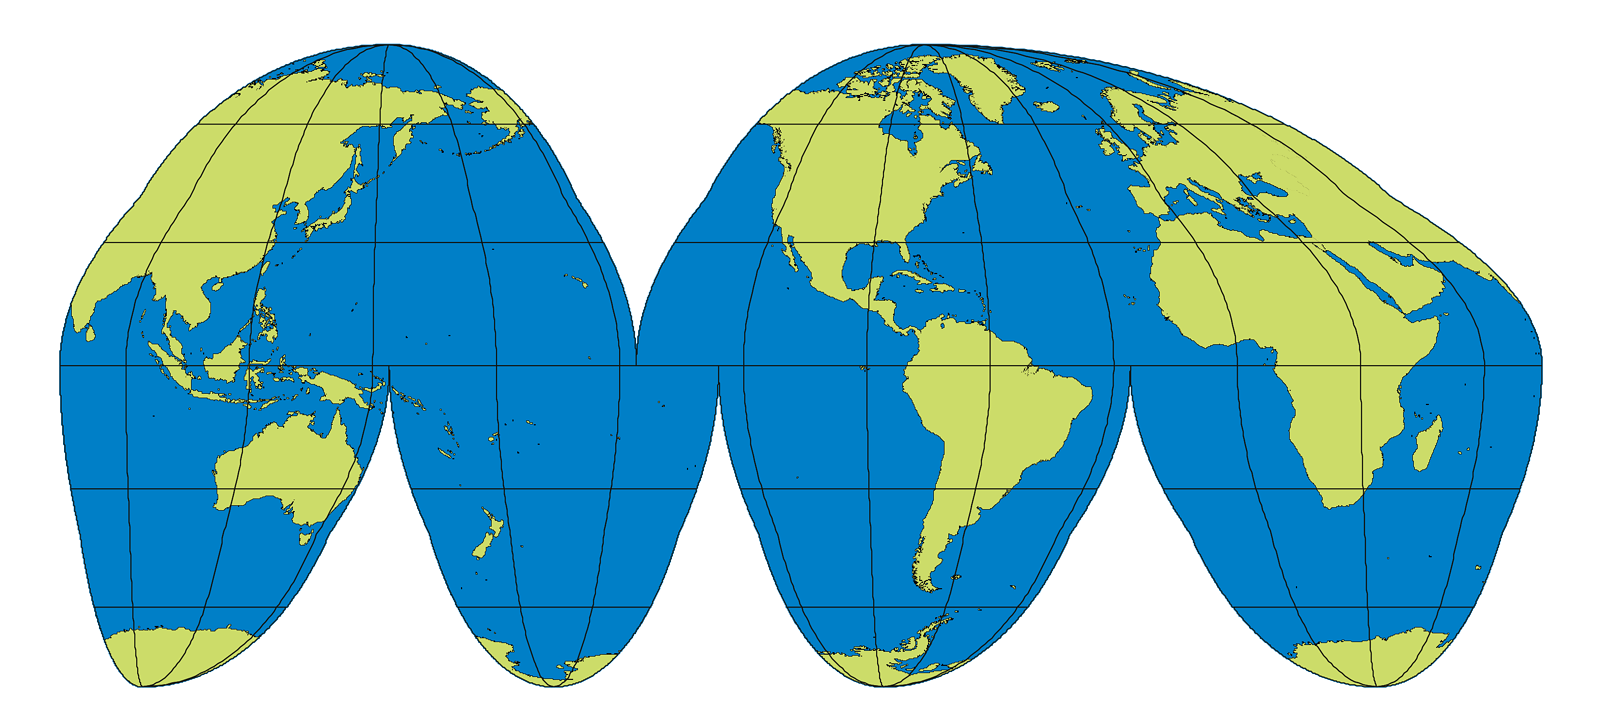 Weltkarte von John Paul Goode (1862-1932) die in der Mitte von Ozeanen unterbrochen ist um insgesamt Verzerrungen zu reduzieren